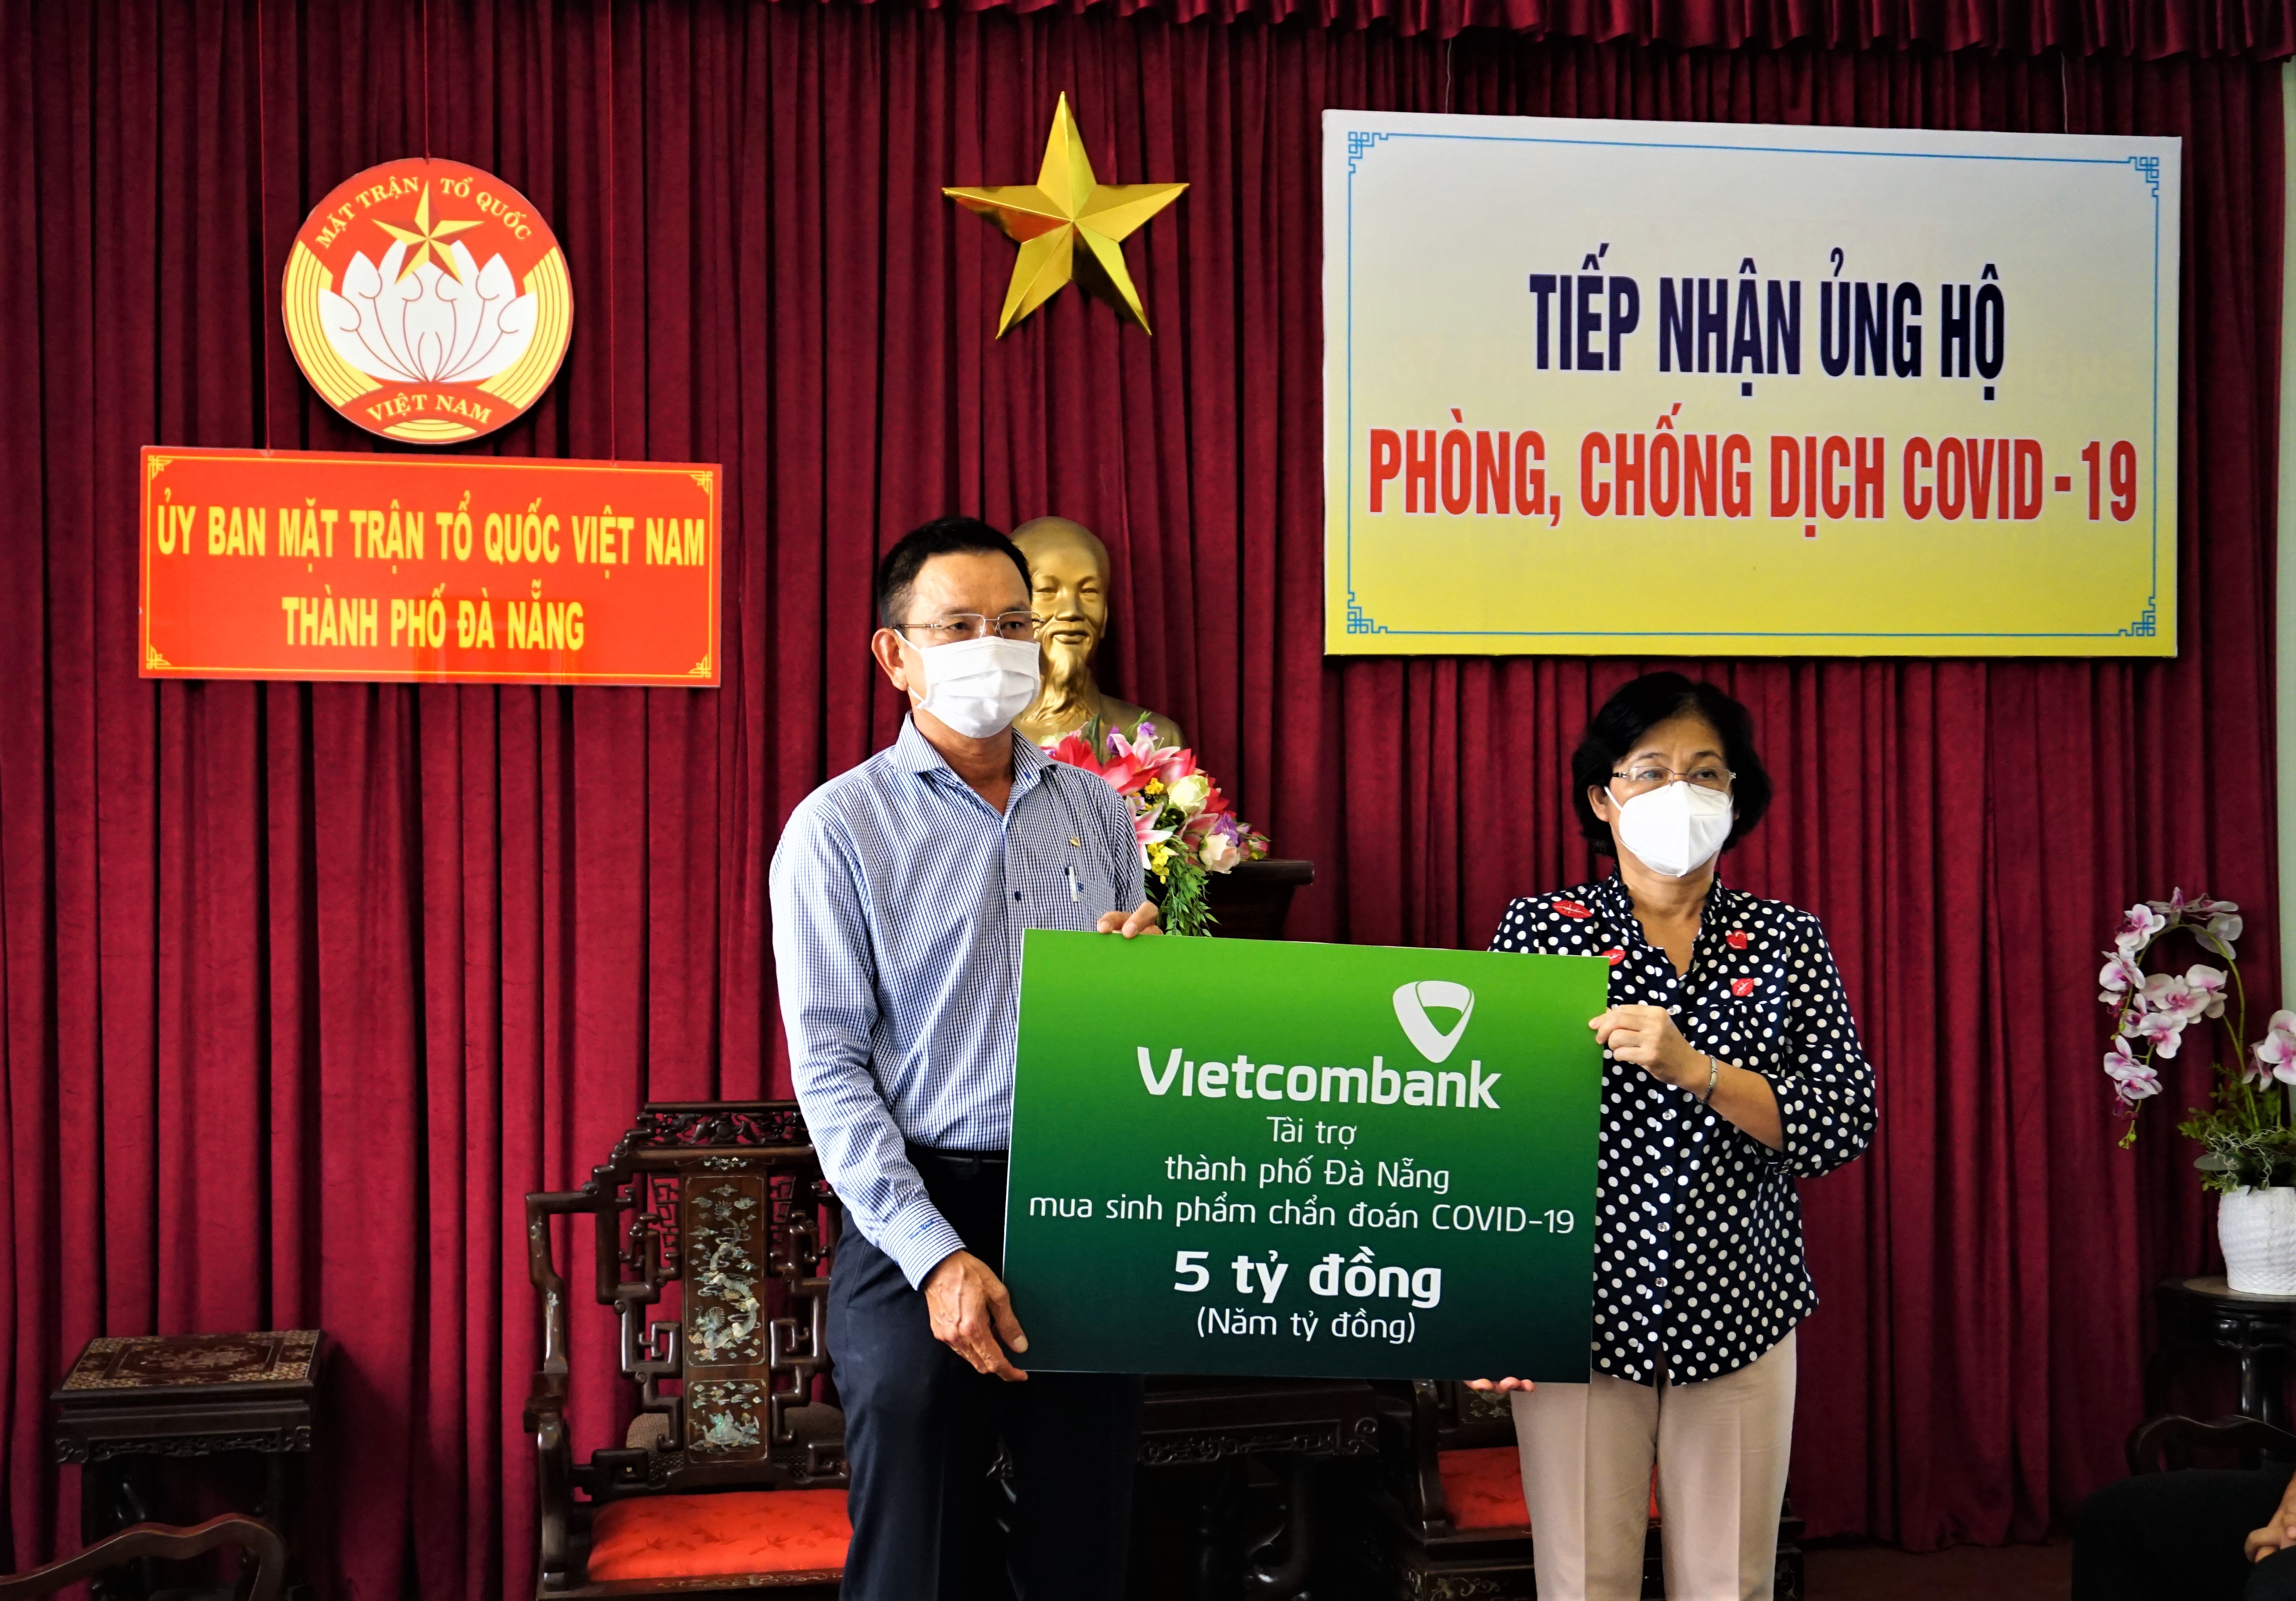 Vietcombank ủng hộ 5 tỷ đồng chung tay cùng thành phố Đà Nẵng đẩy lùi COVID-19 - Ảnh 1